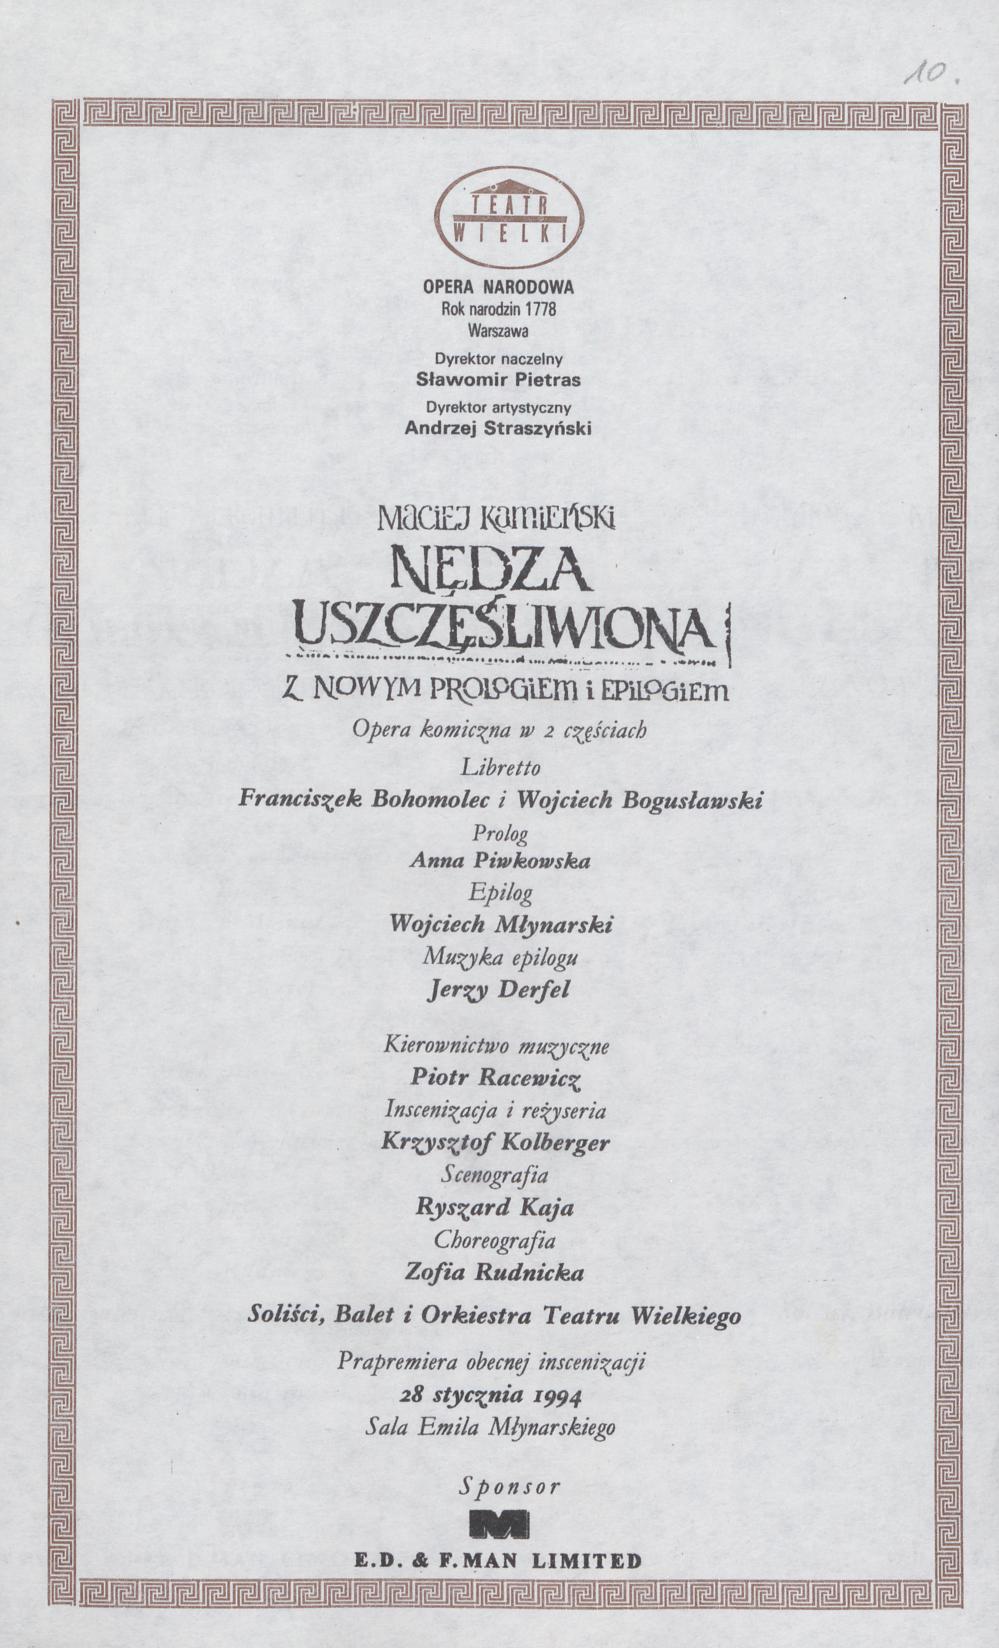 Wkładka obsadowa „Nędza uszczęśliwiona” Maciej Kamieński 29-04-1994